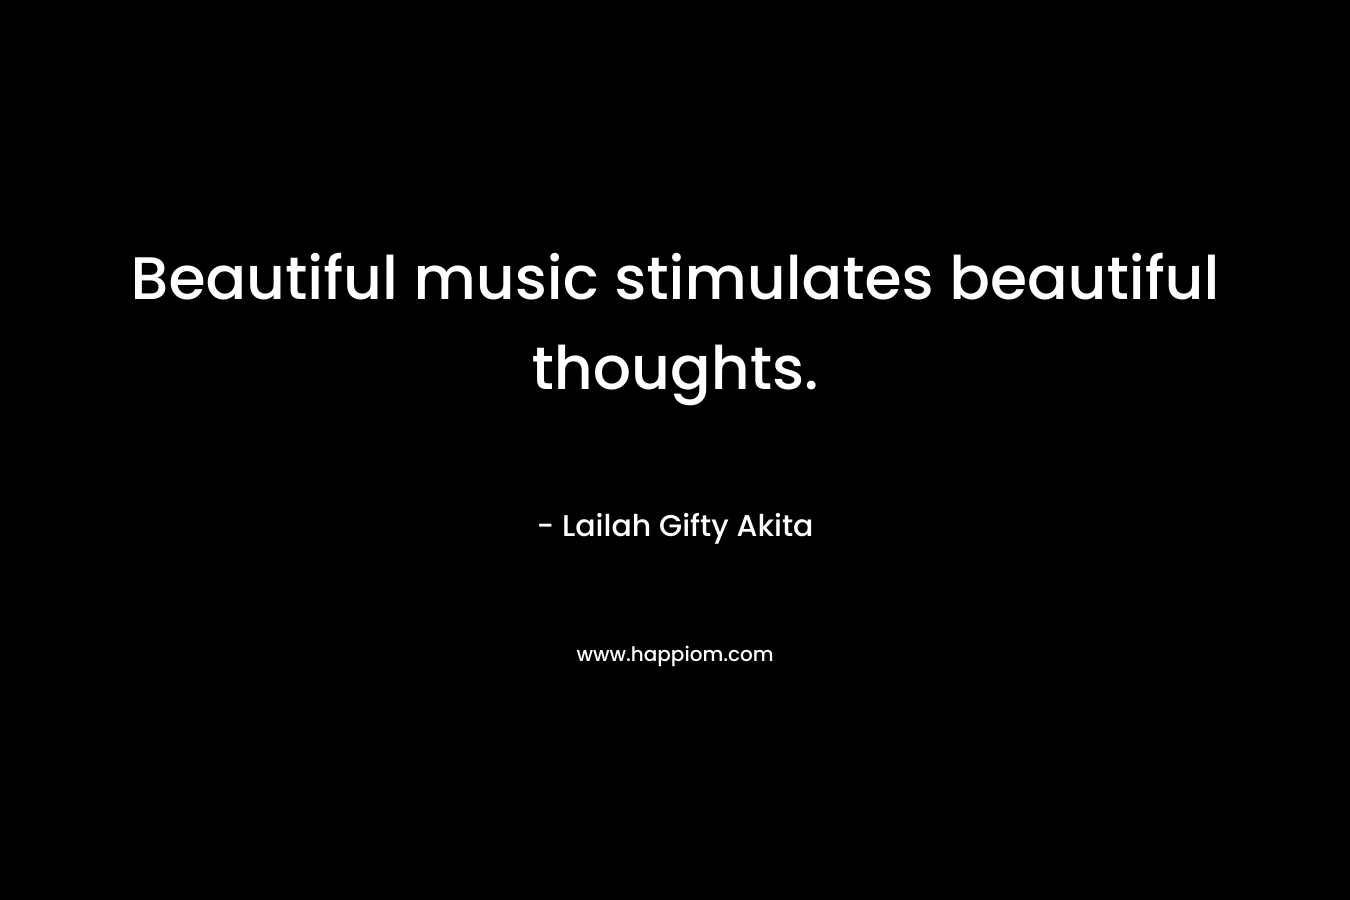 Beautiful music stimulates beautiful thoughts.